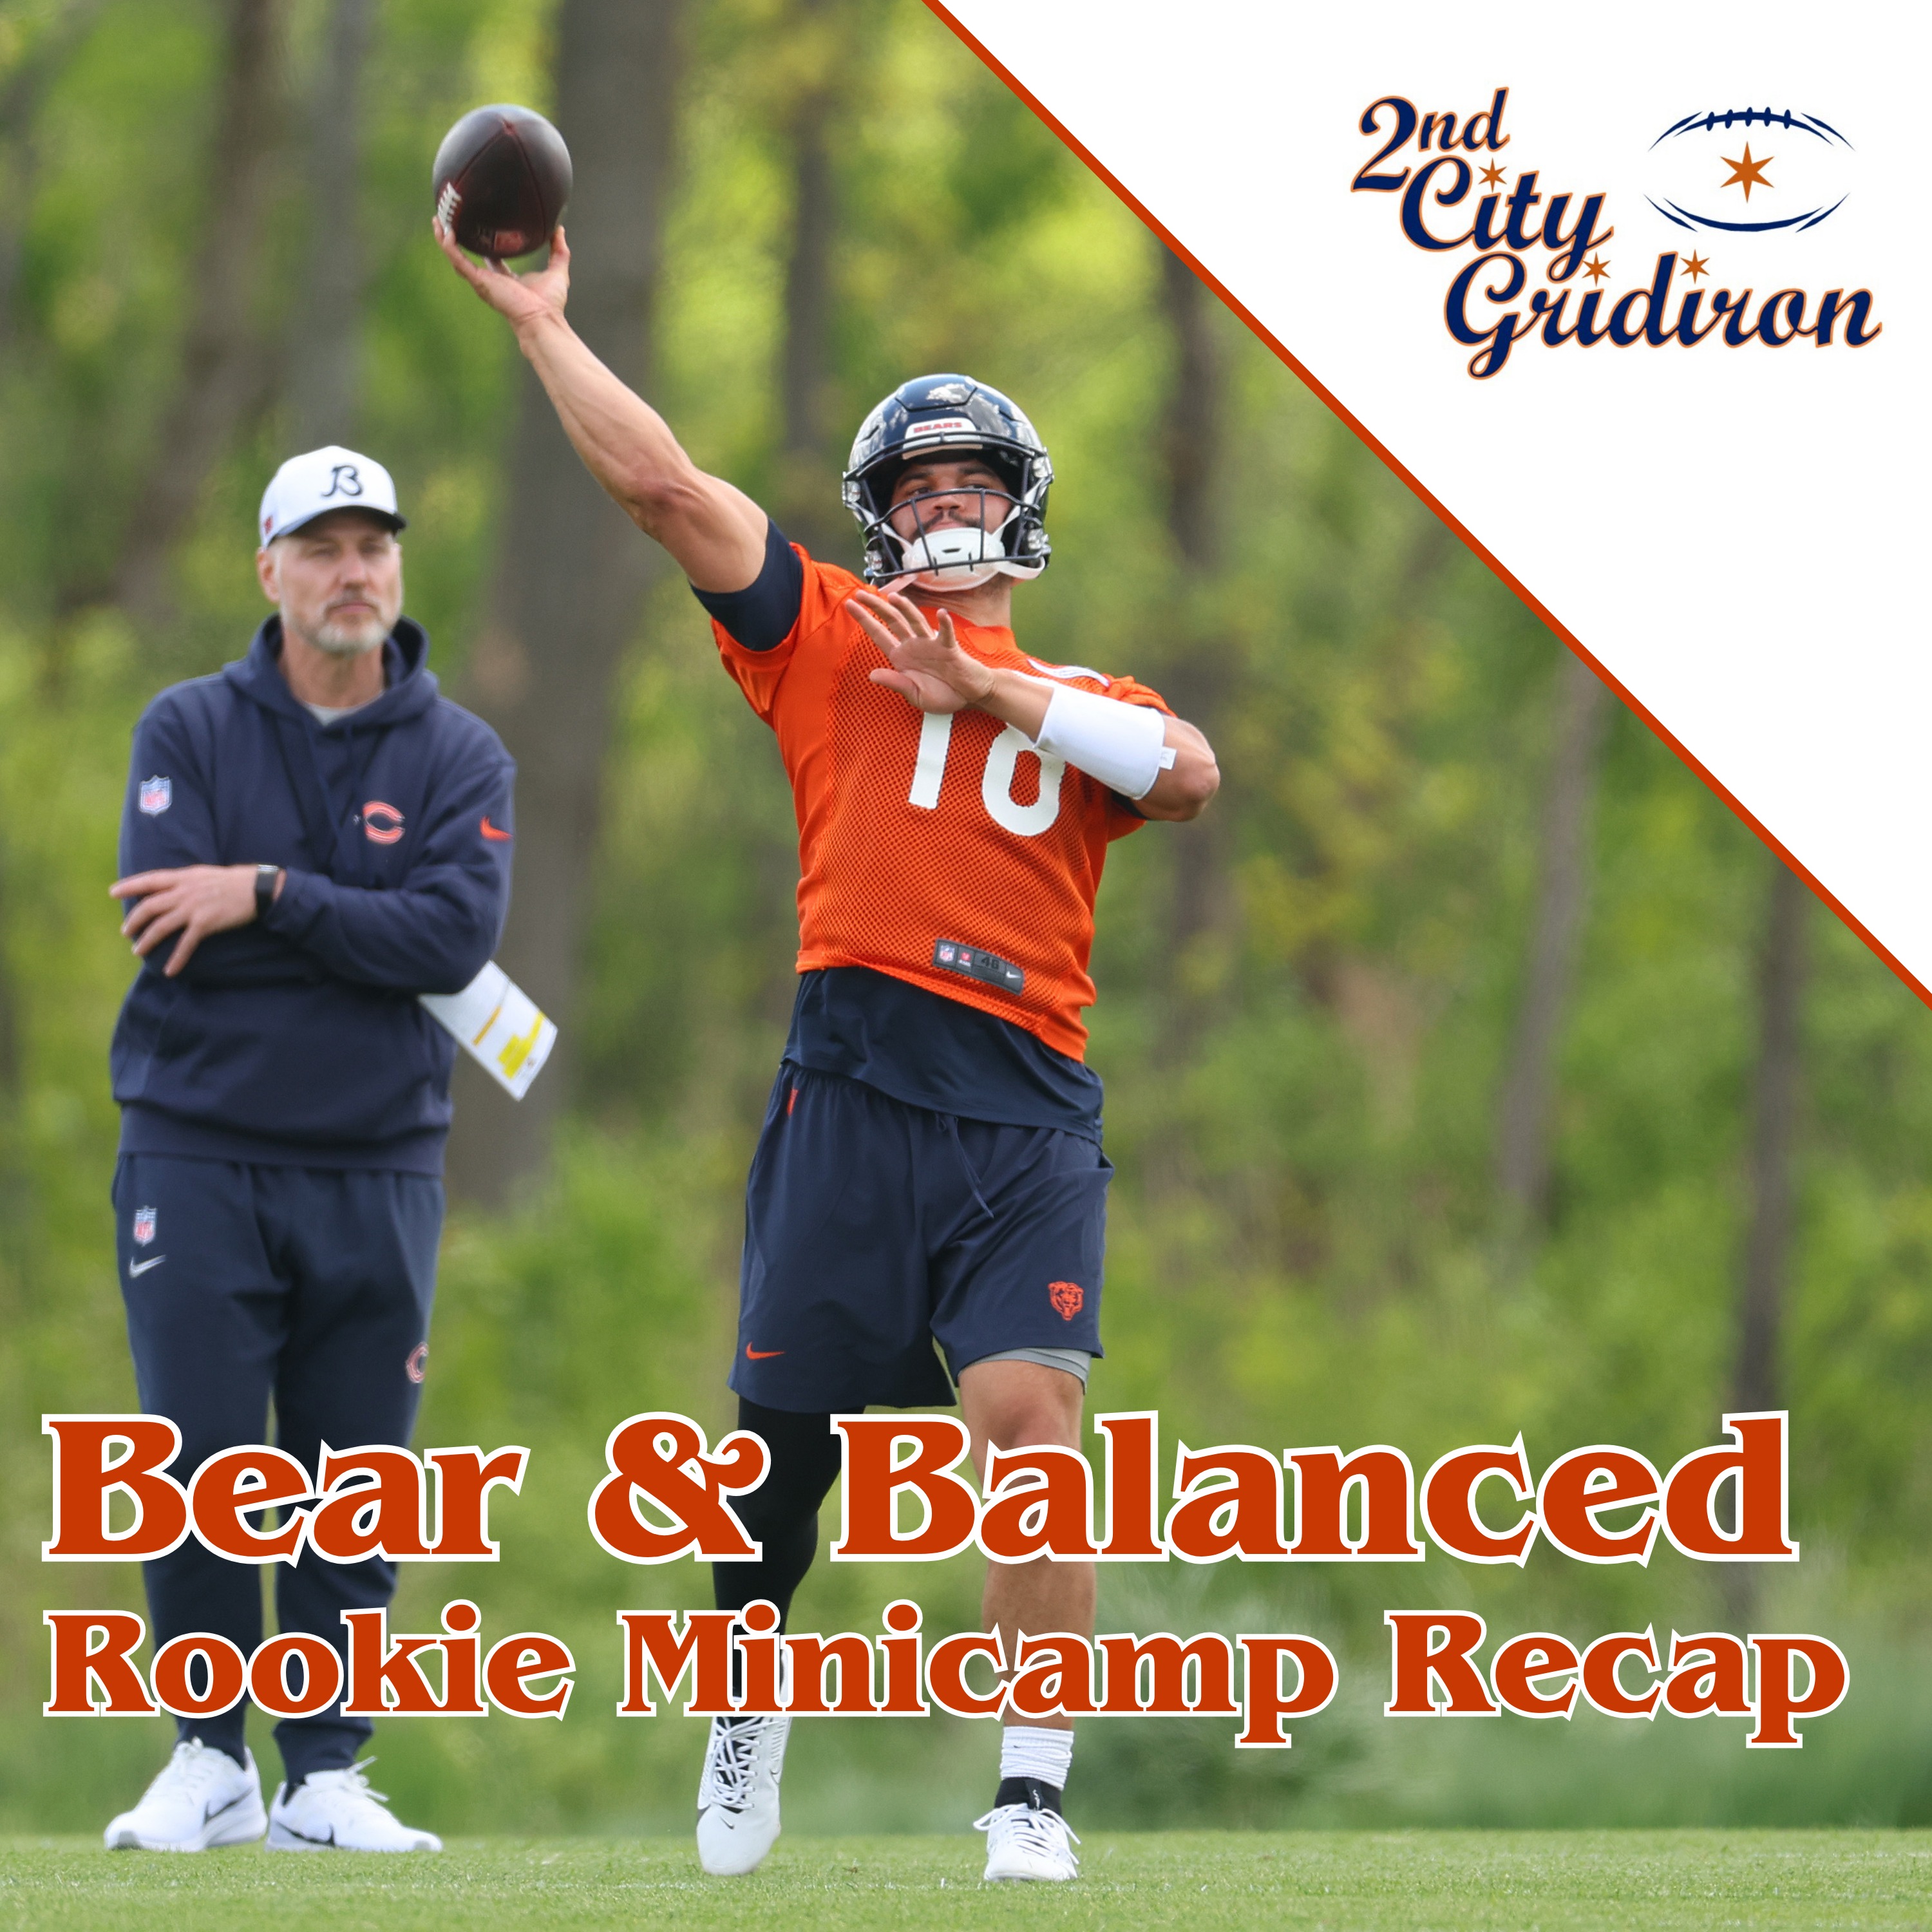 Bear & Balanced Rookie Minicamp Recap